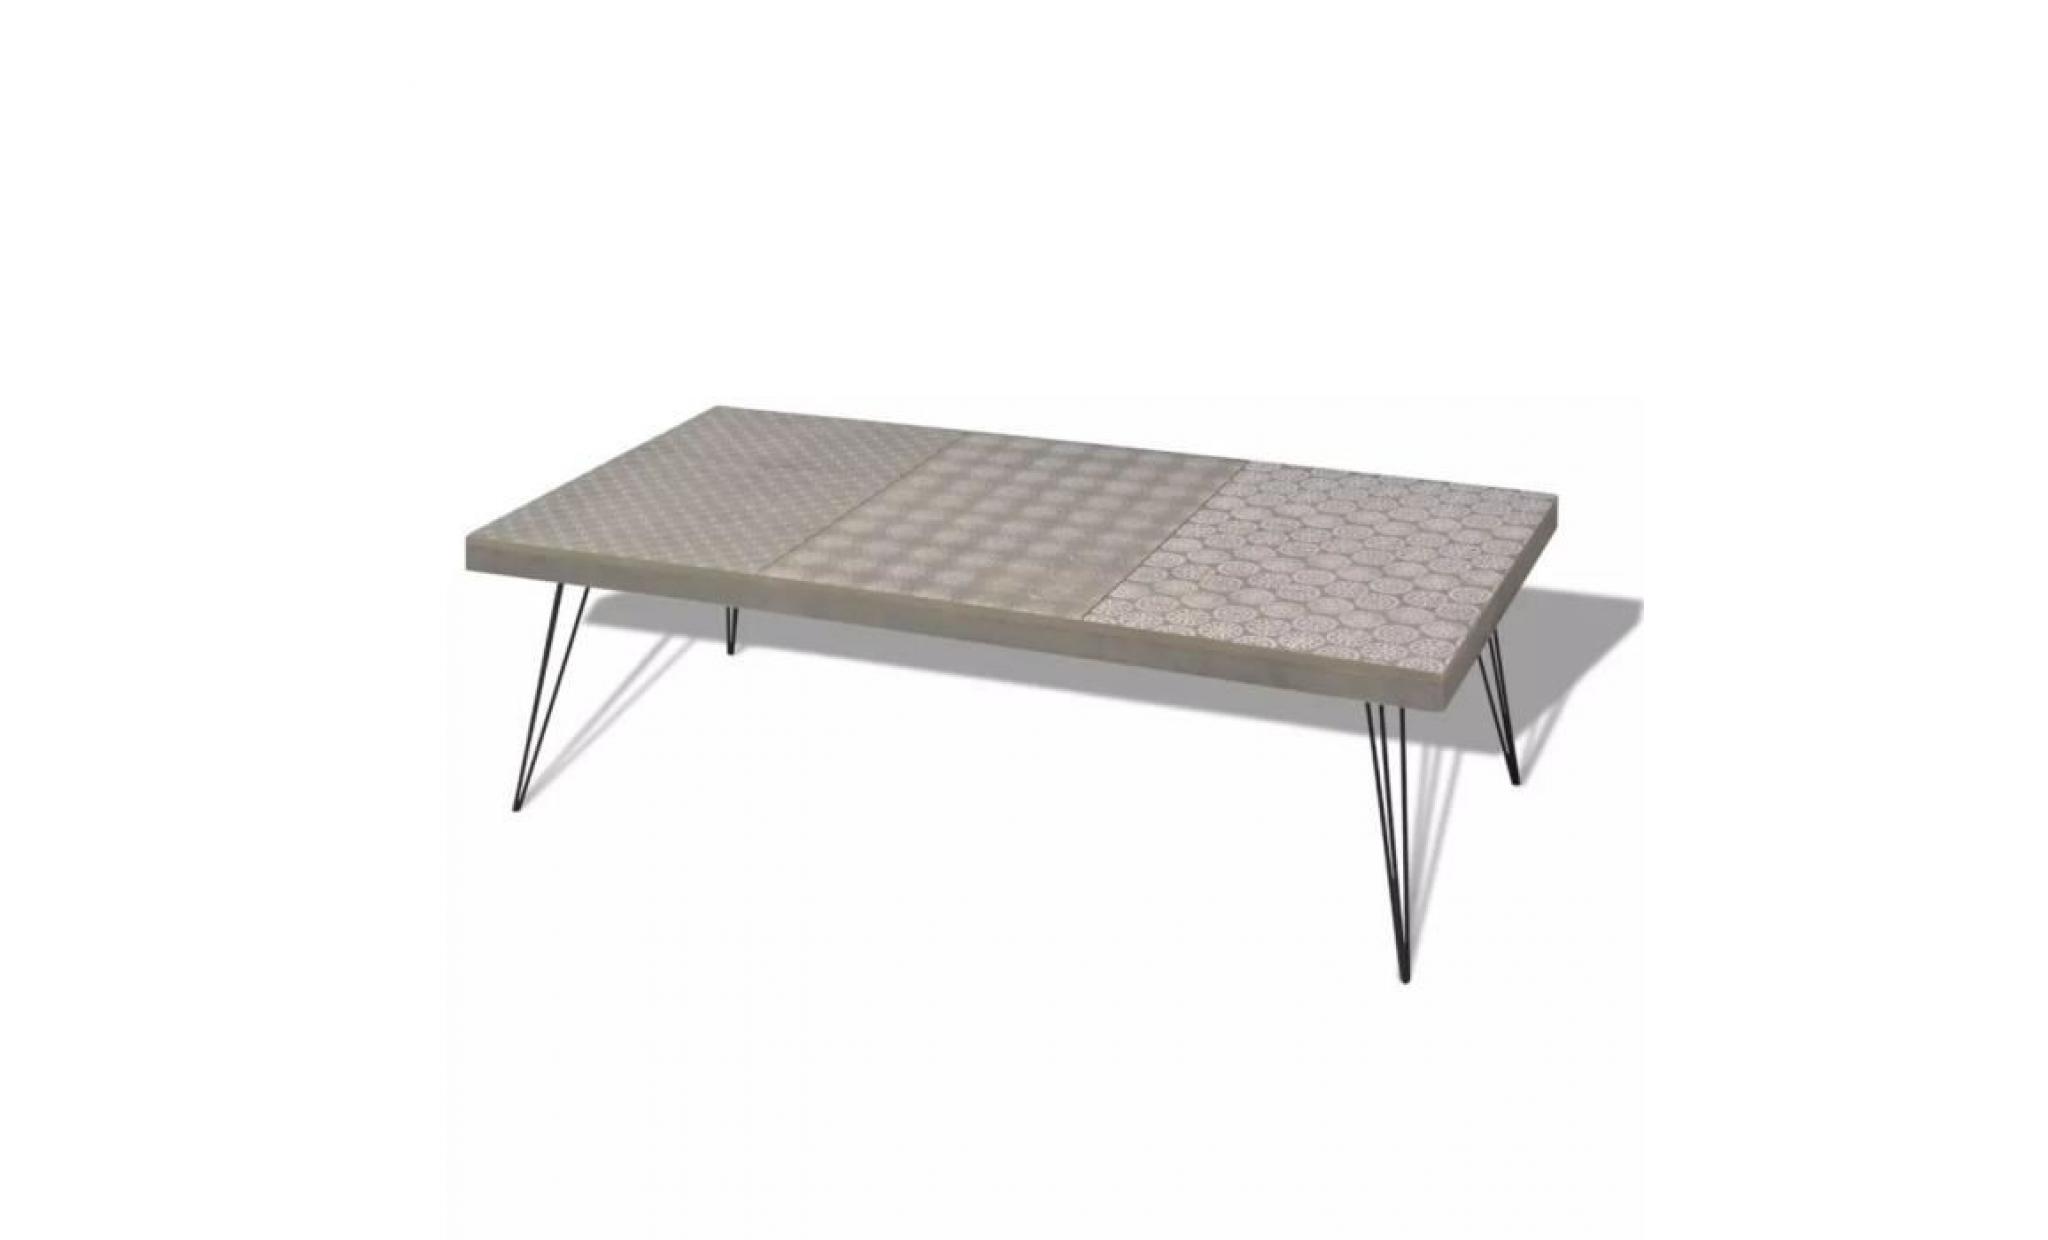 r26 cette jolie table basse a un design retro et deviendra le point central de votre salon.